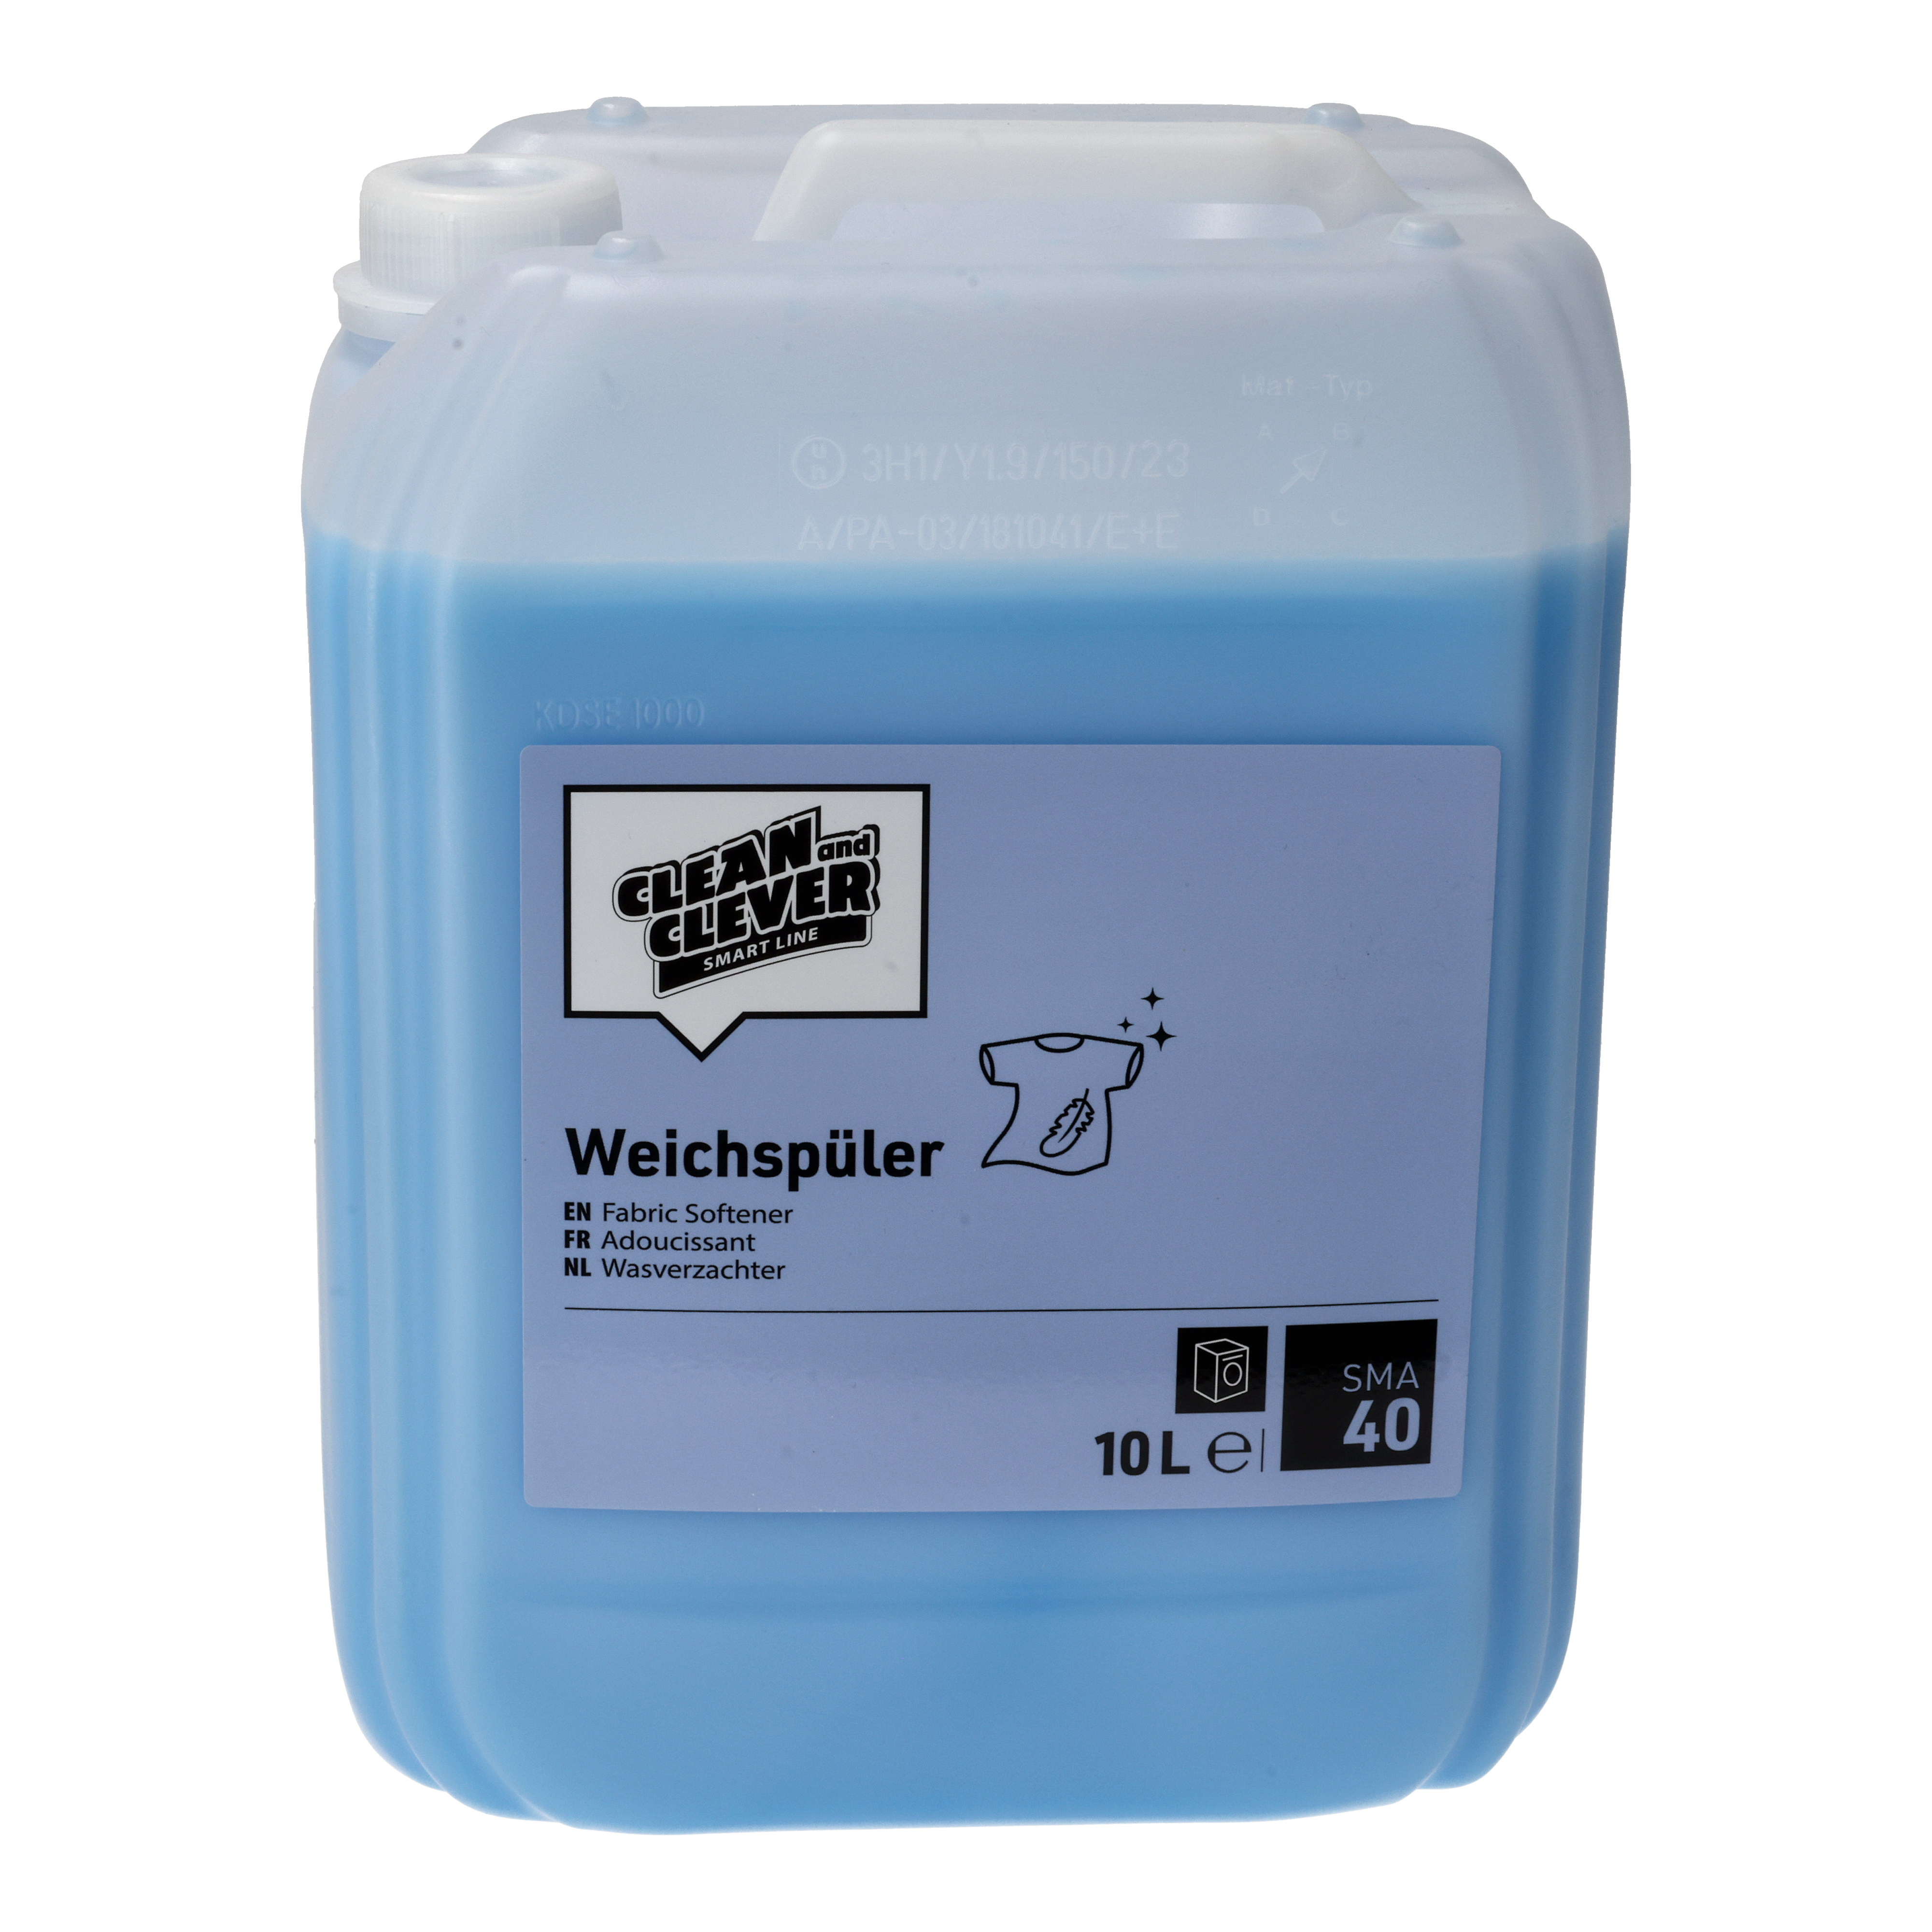 CLEAN and CLEVER SMART Weichspüler SMA40 - 10 Liter